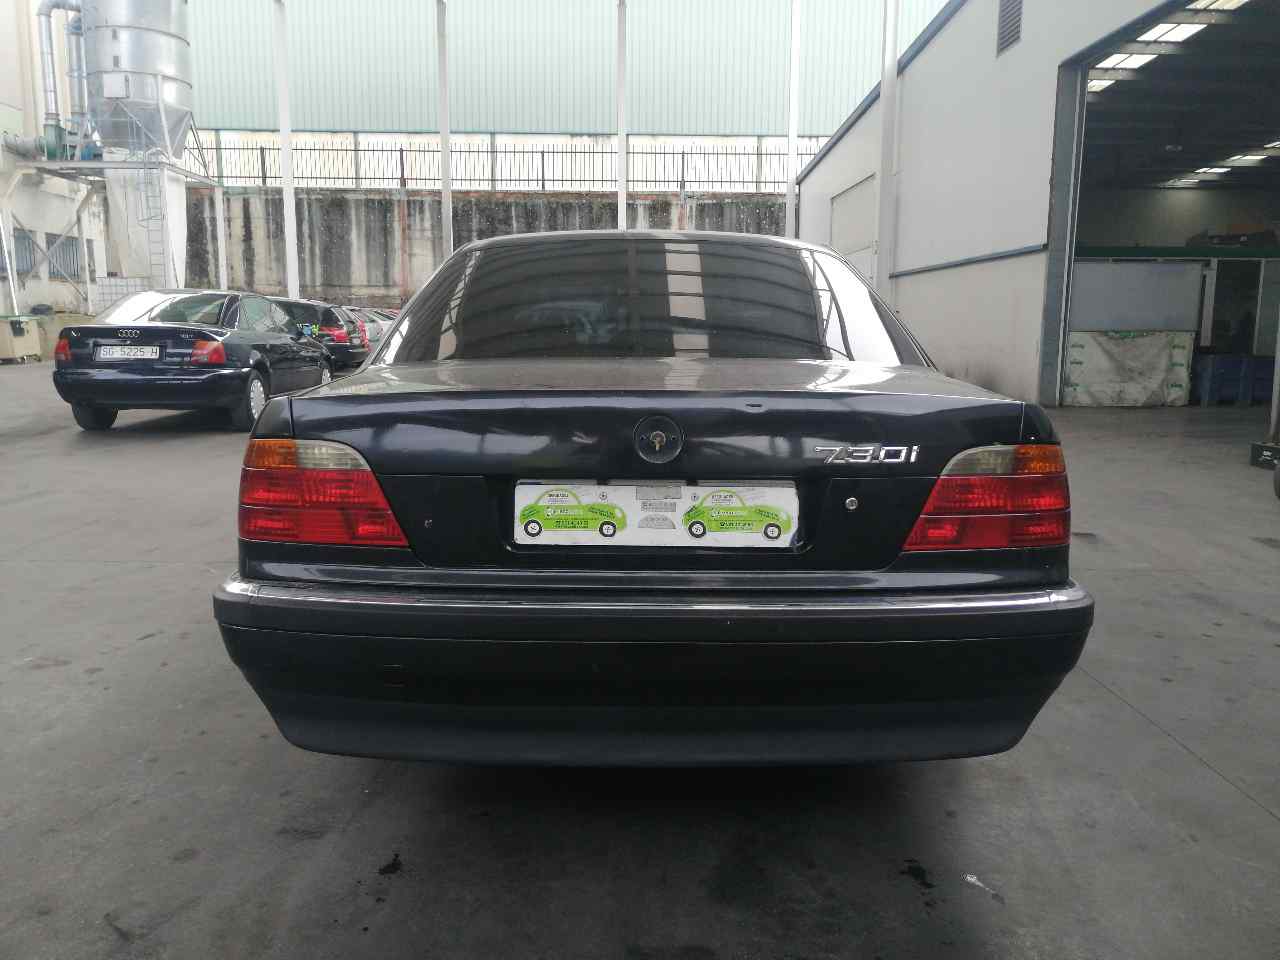 BMW 7 Series E38 (1994-2001) Front Left Seatbelt 8162703, 4PUERTAS 19788744